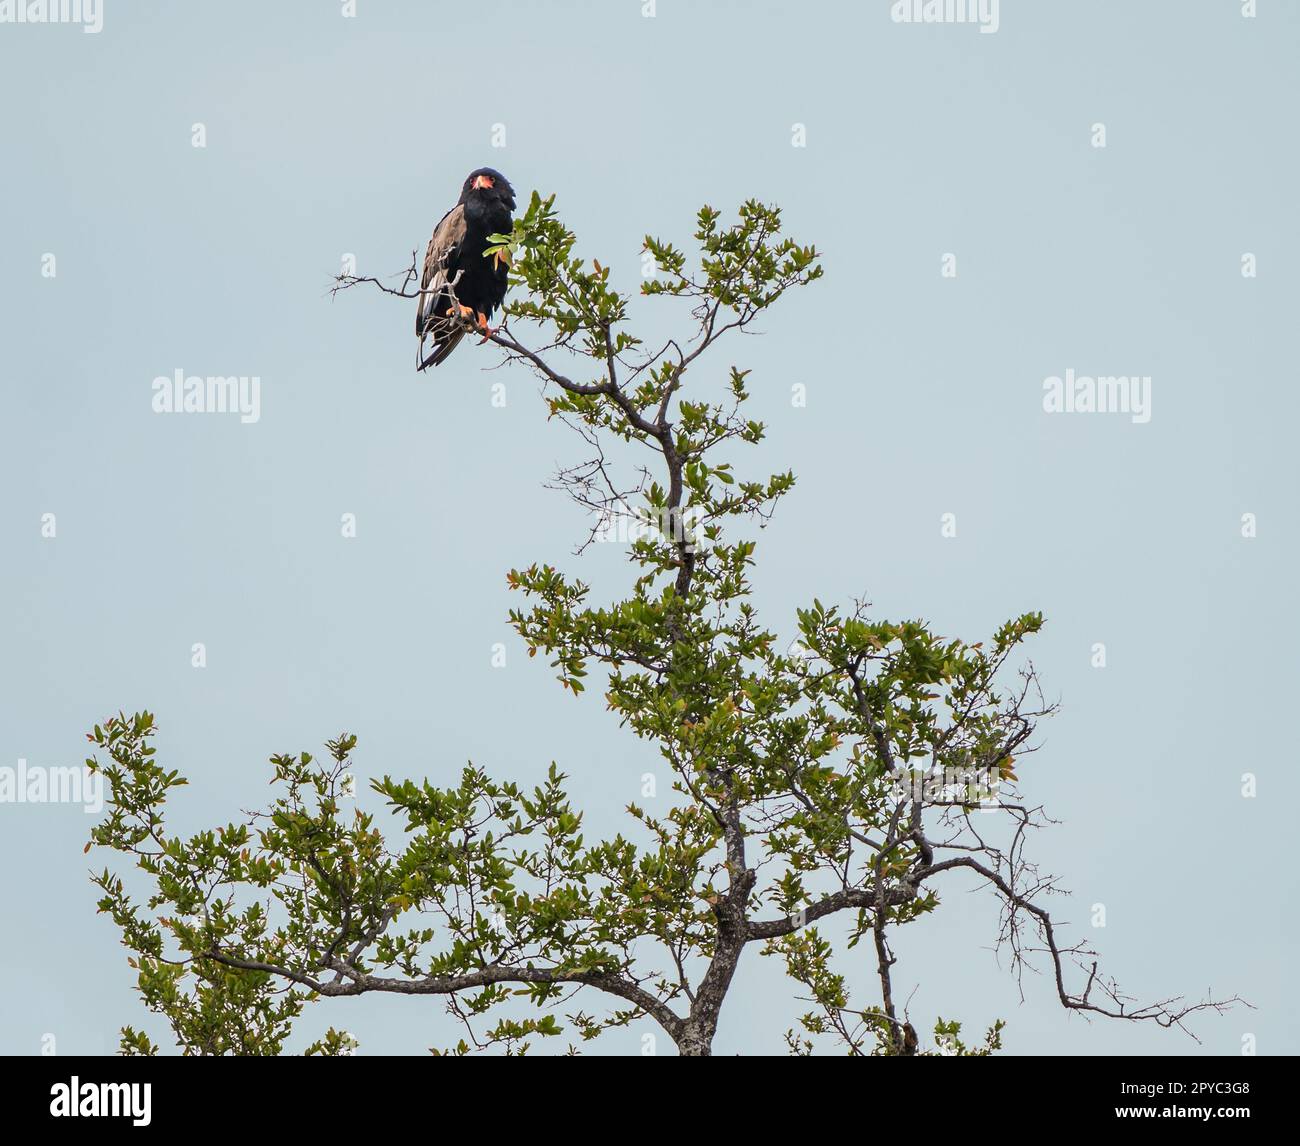 Ein Bateleuradler (Terathopius ecaudatus), der in einem Baum, Okavanga Delta, Botsuana, Afrika, hoch oben steht Stockfoto